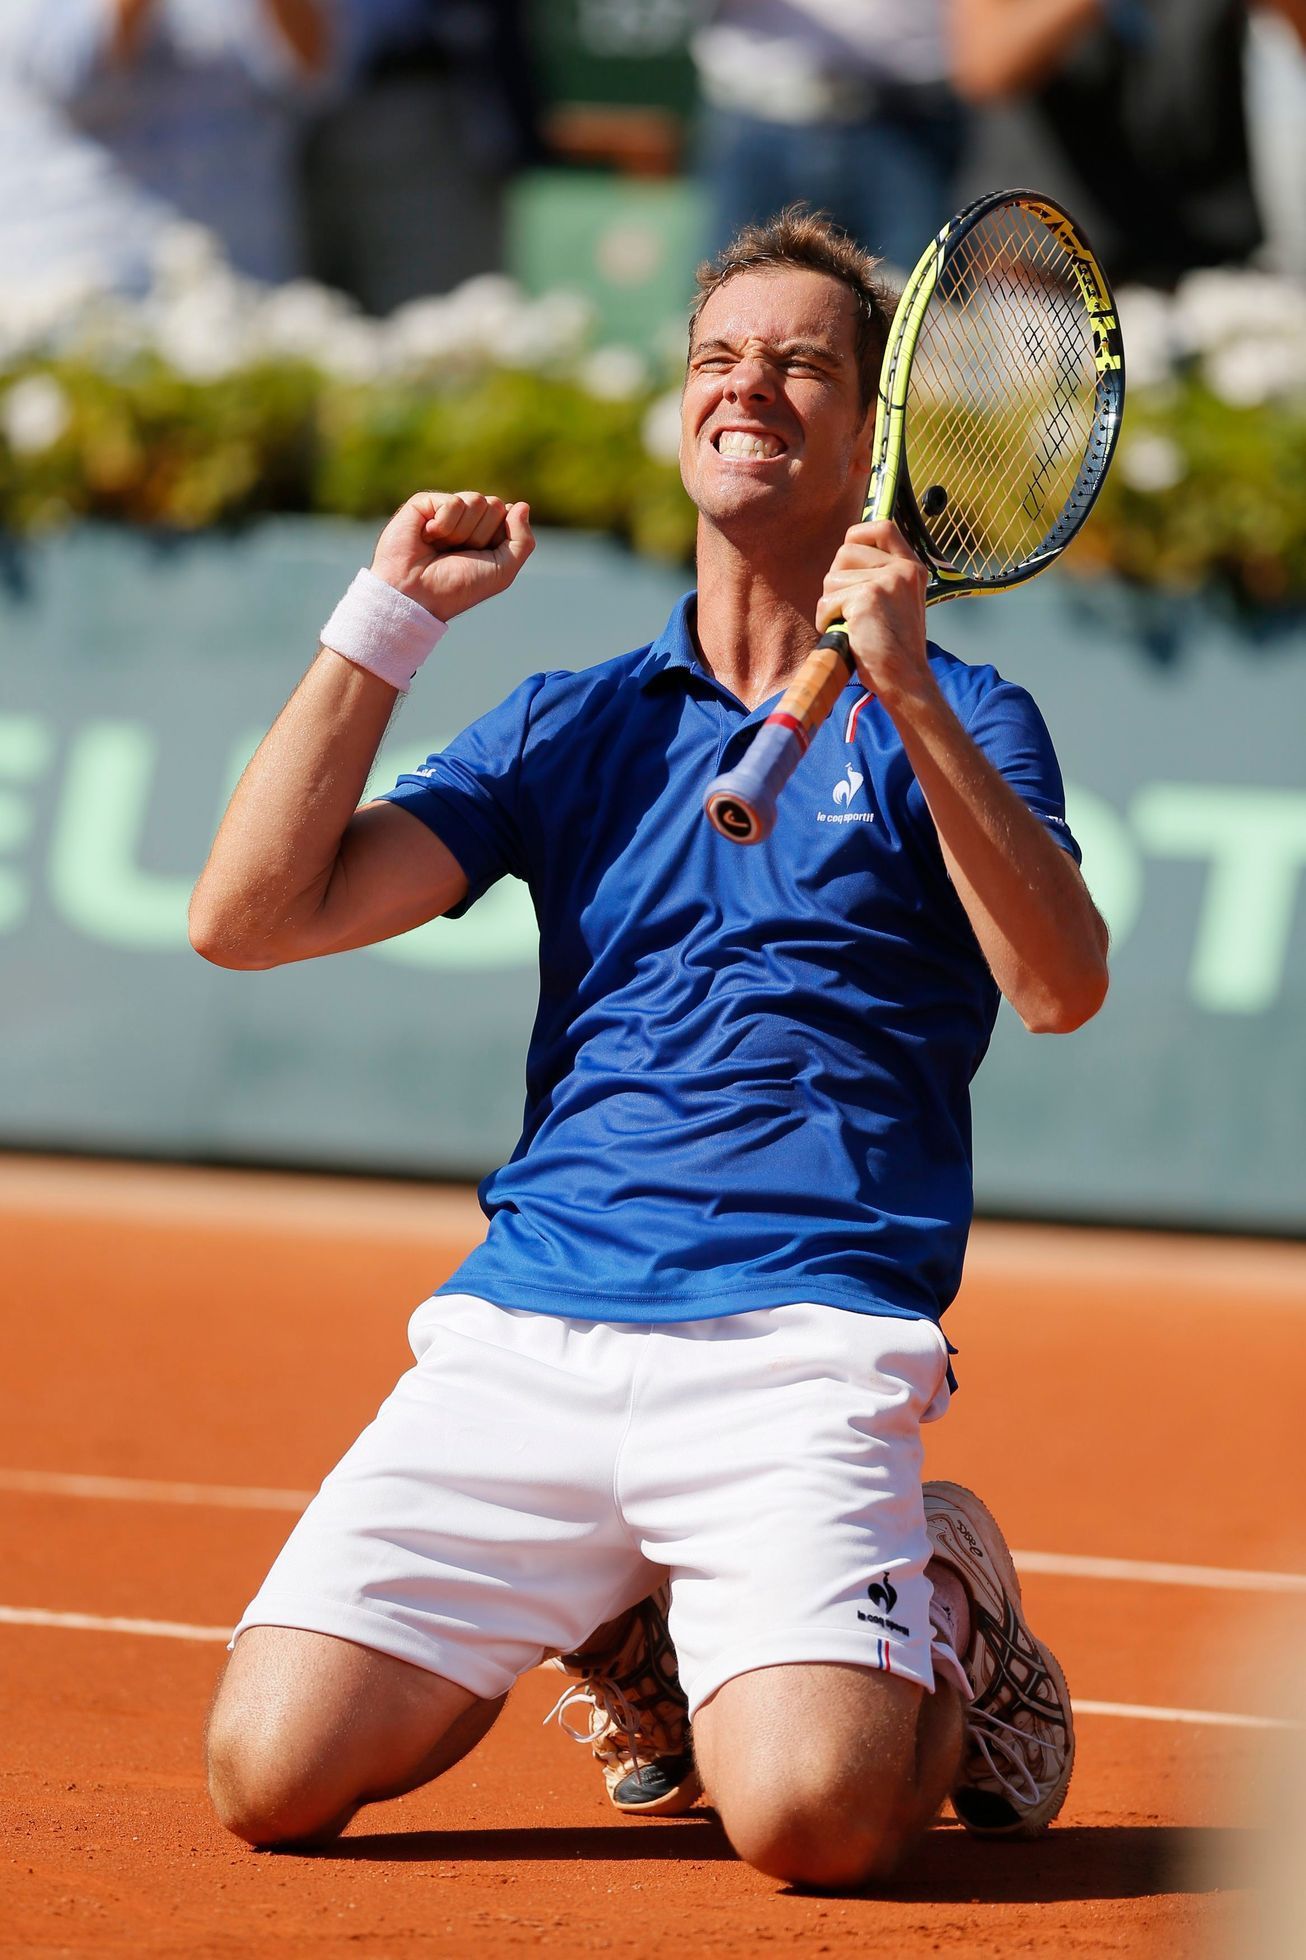 Richard Gasquet v semifinále Davis cupu 2014